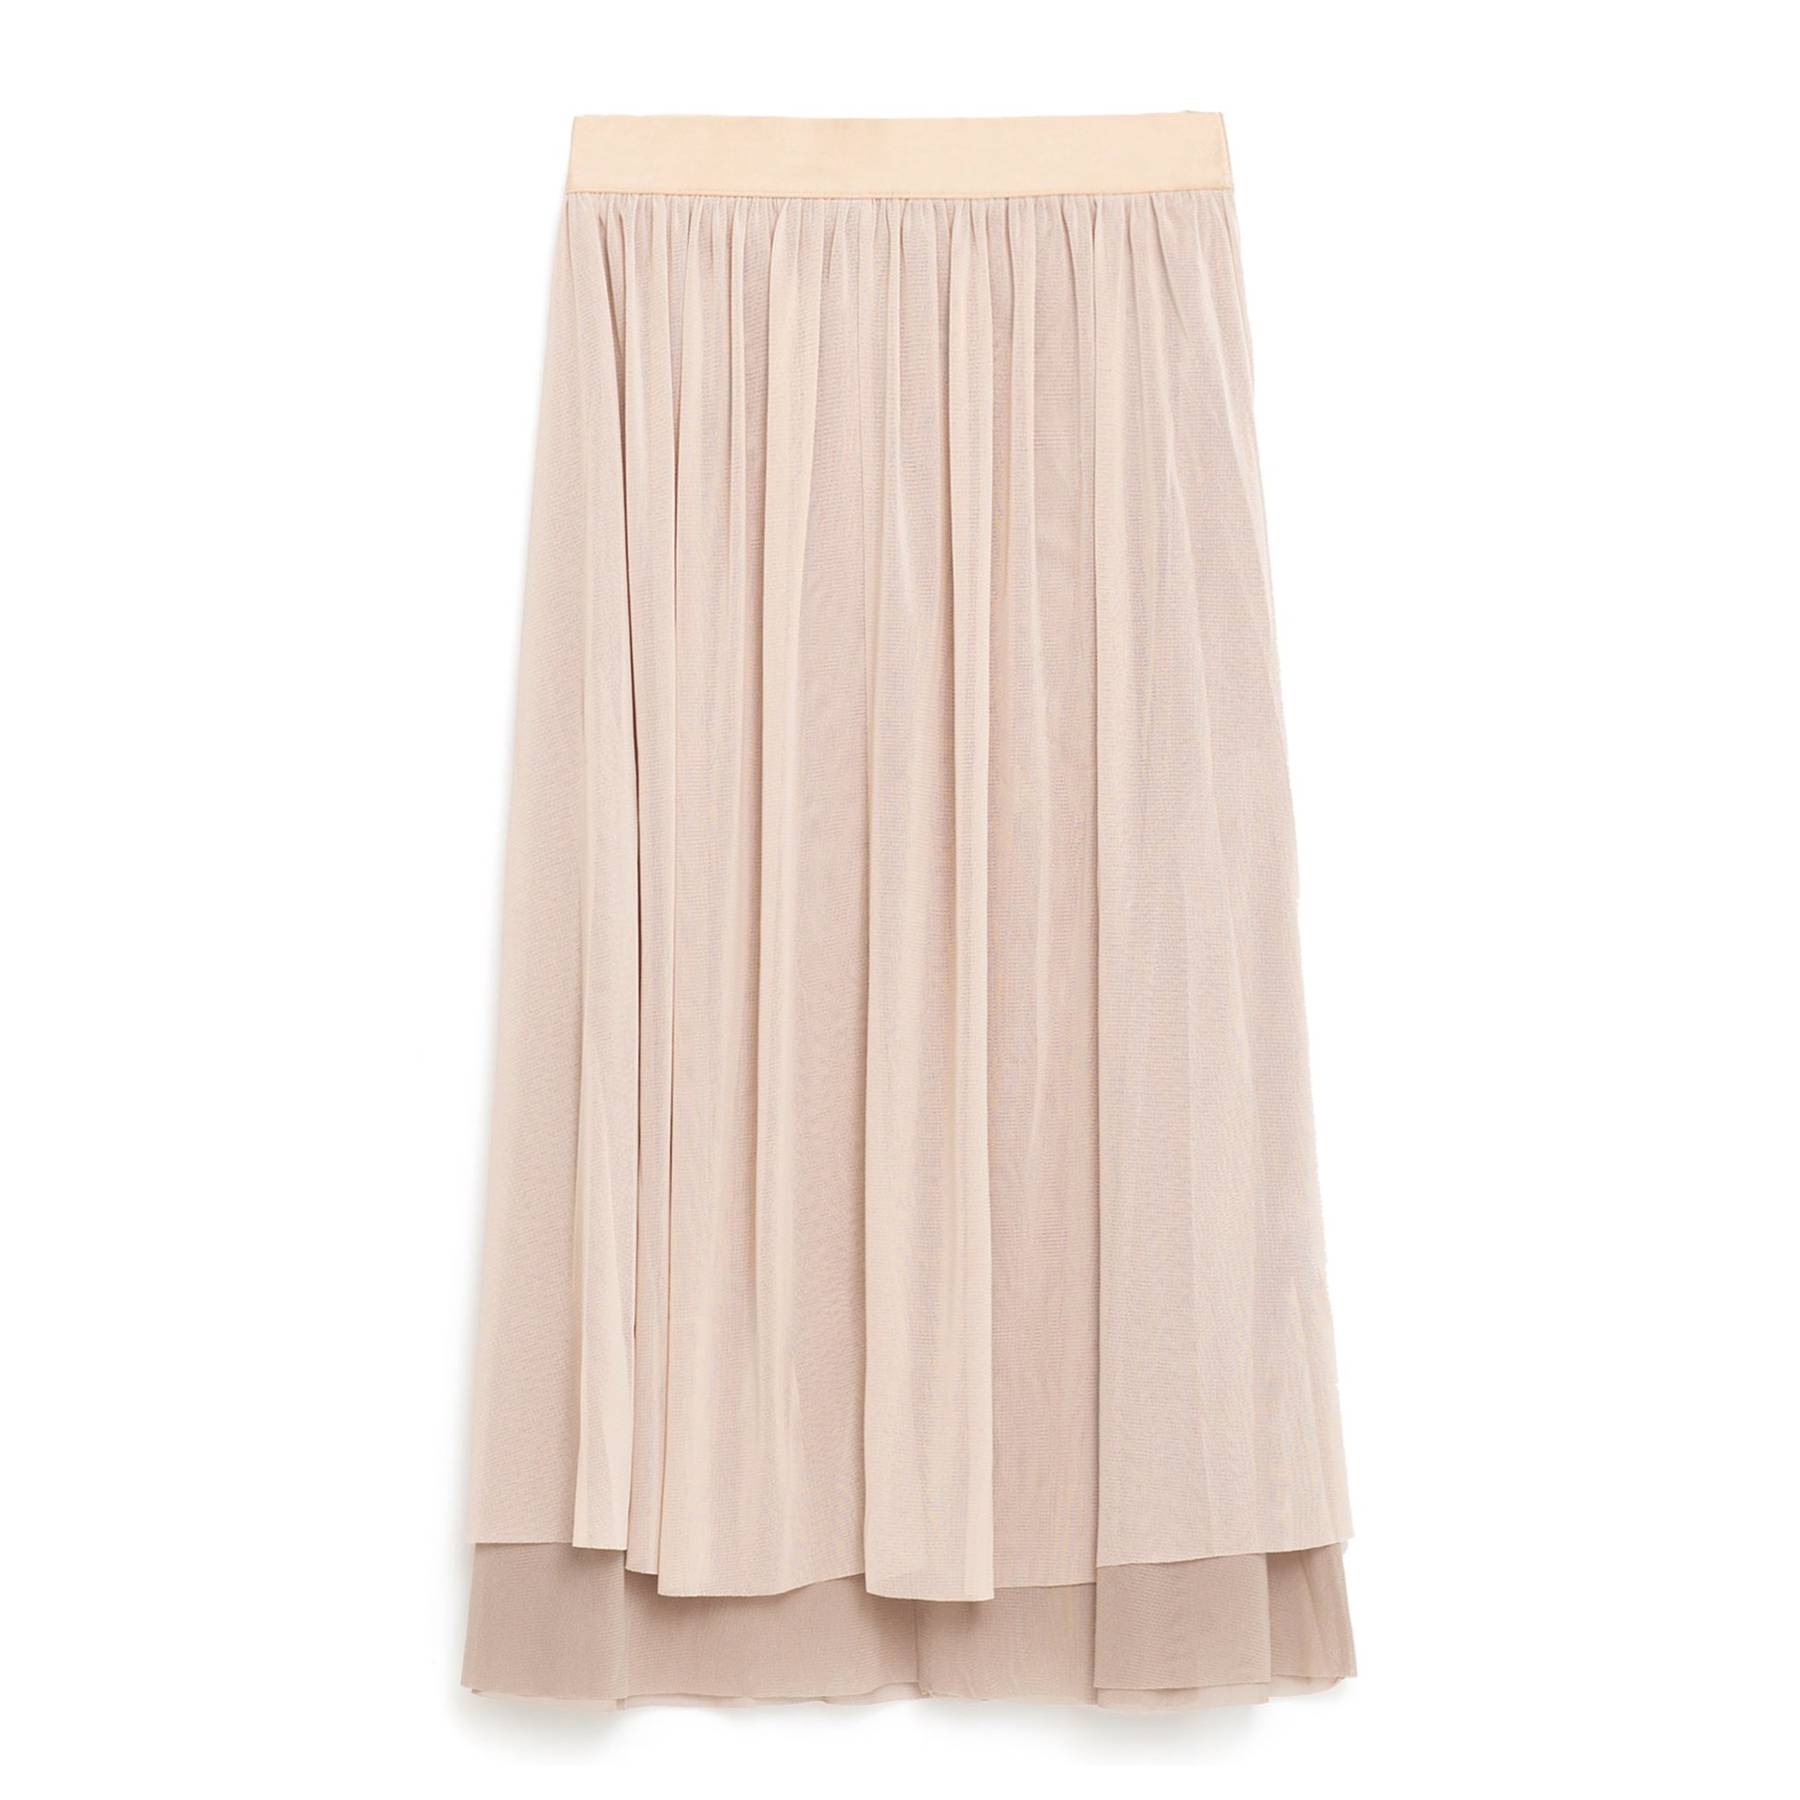 Best skirts for spring summer 2016 | Glamour UK